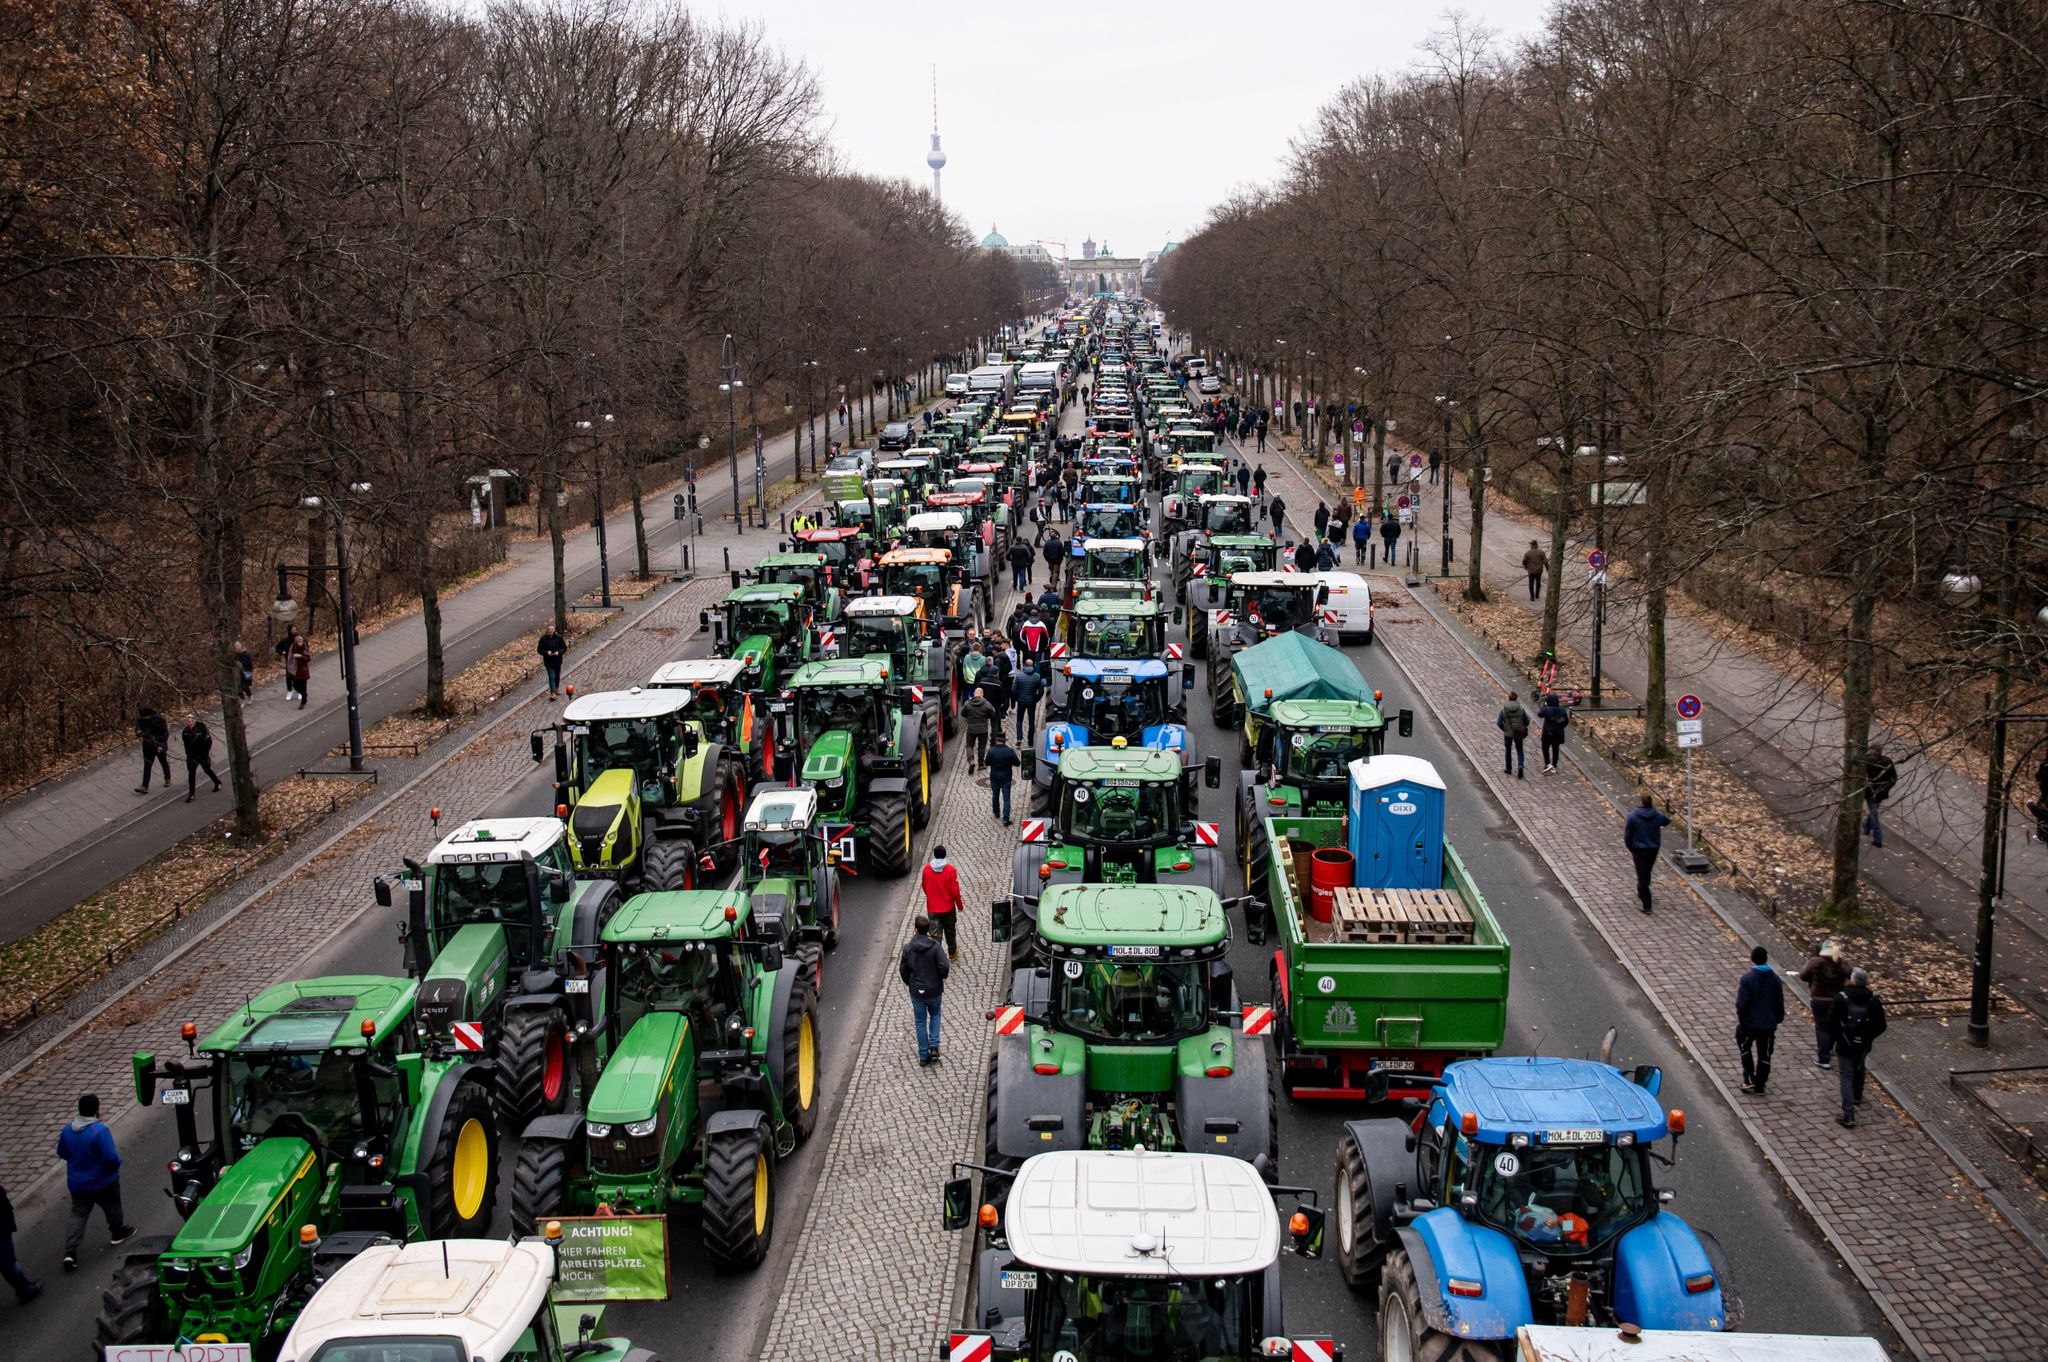 Alles dicht? Der deutsche Bauernverband ruft ab 8. Januar zu einer landesweiten Aktionswoche auf - unter anderem drohen Straßenblockaden.